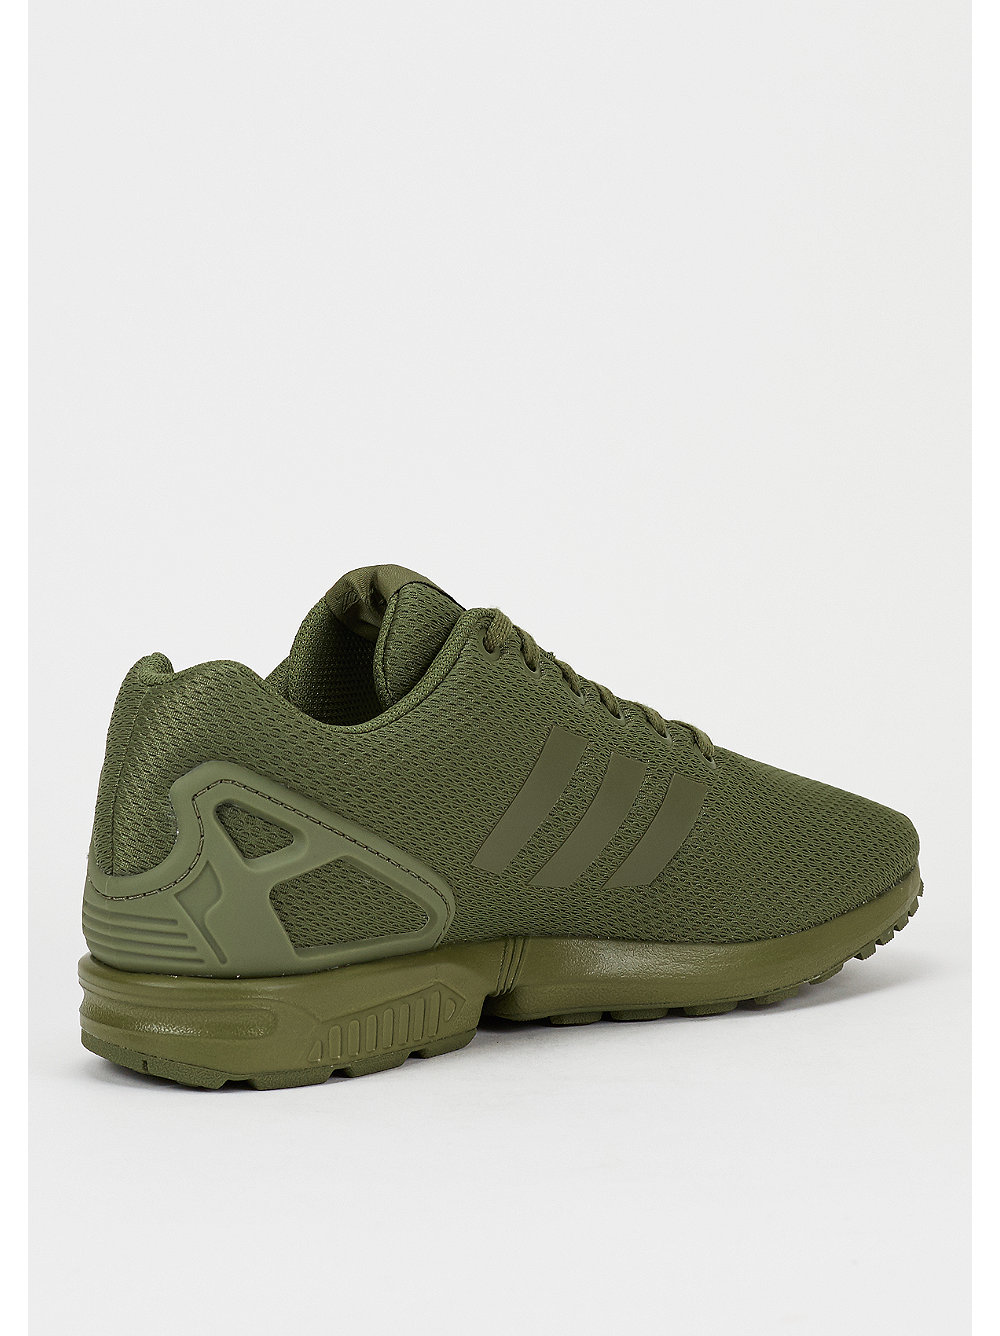 adidas zx flux army green